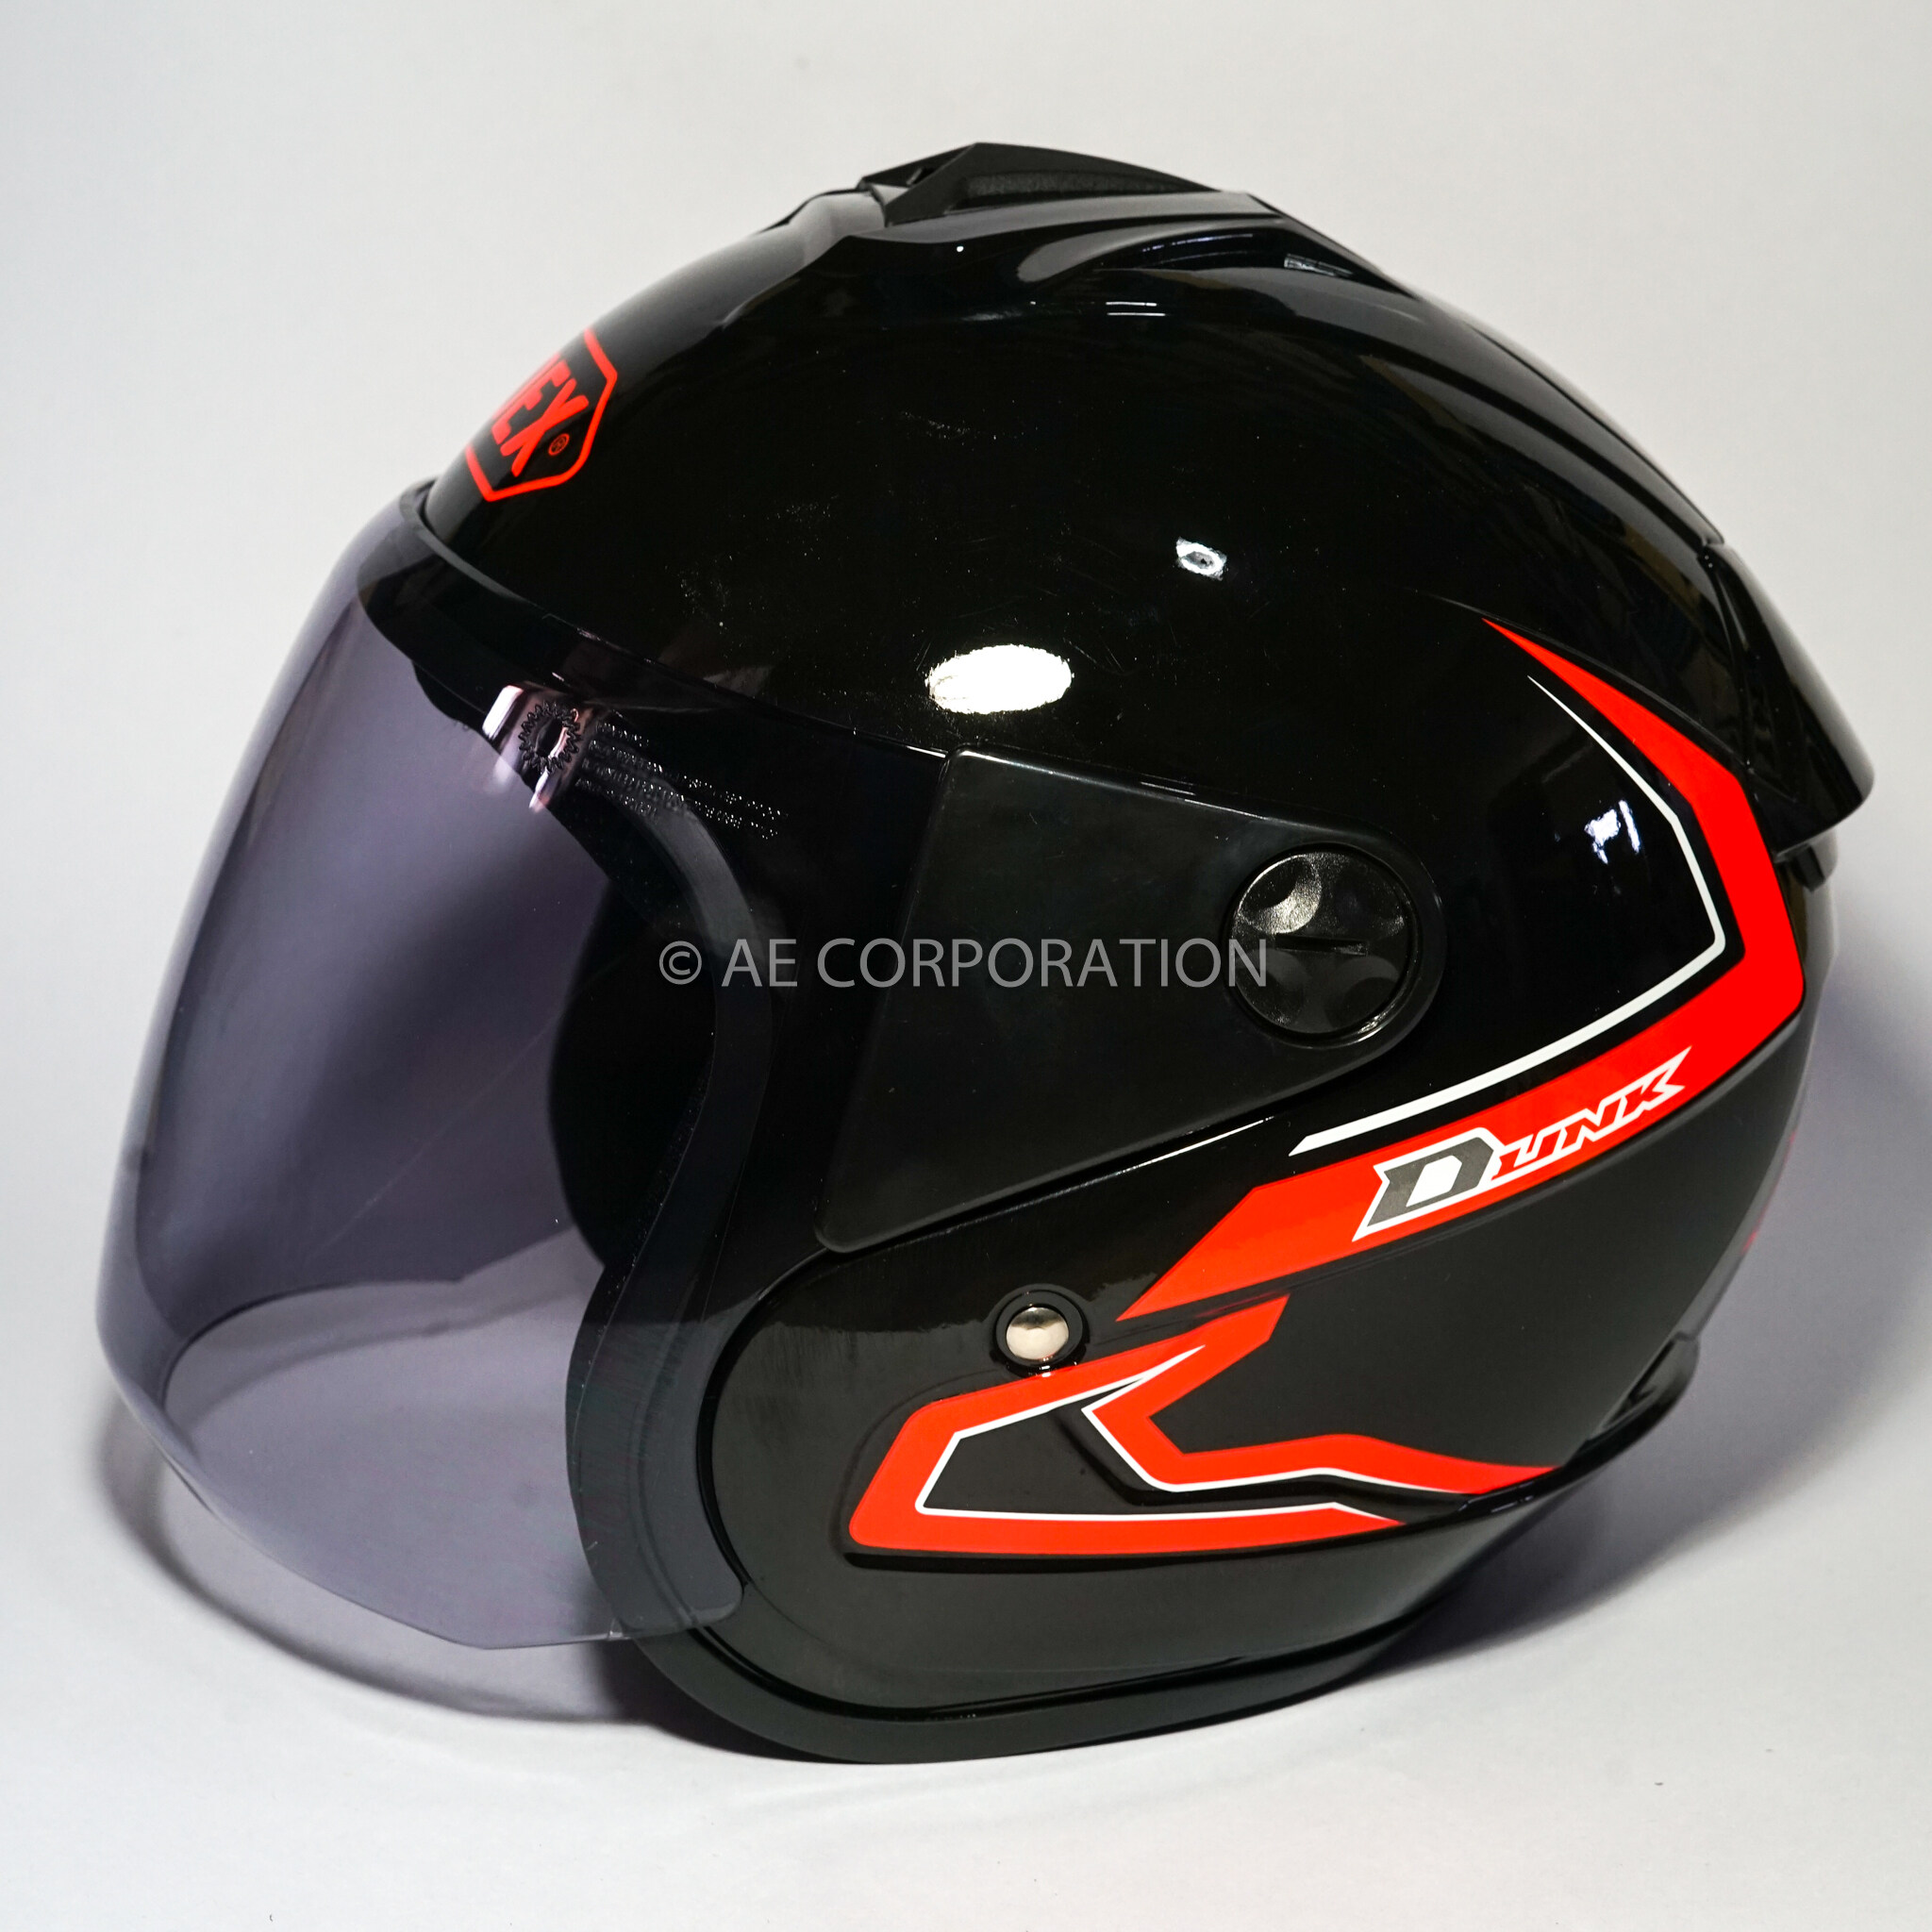 มุมมองเพิ่มเติมเกี่ยวกับ หมวกกันน็อค INDEX DUNK NEW หมวกกันน็อค ของแท้100% ไซต์L สีดำเงา 300IQ Racing